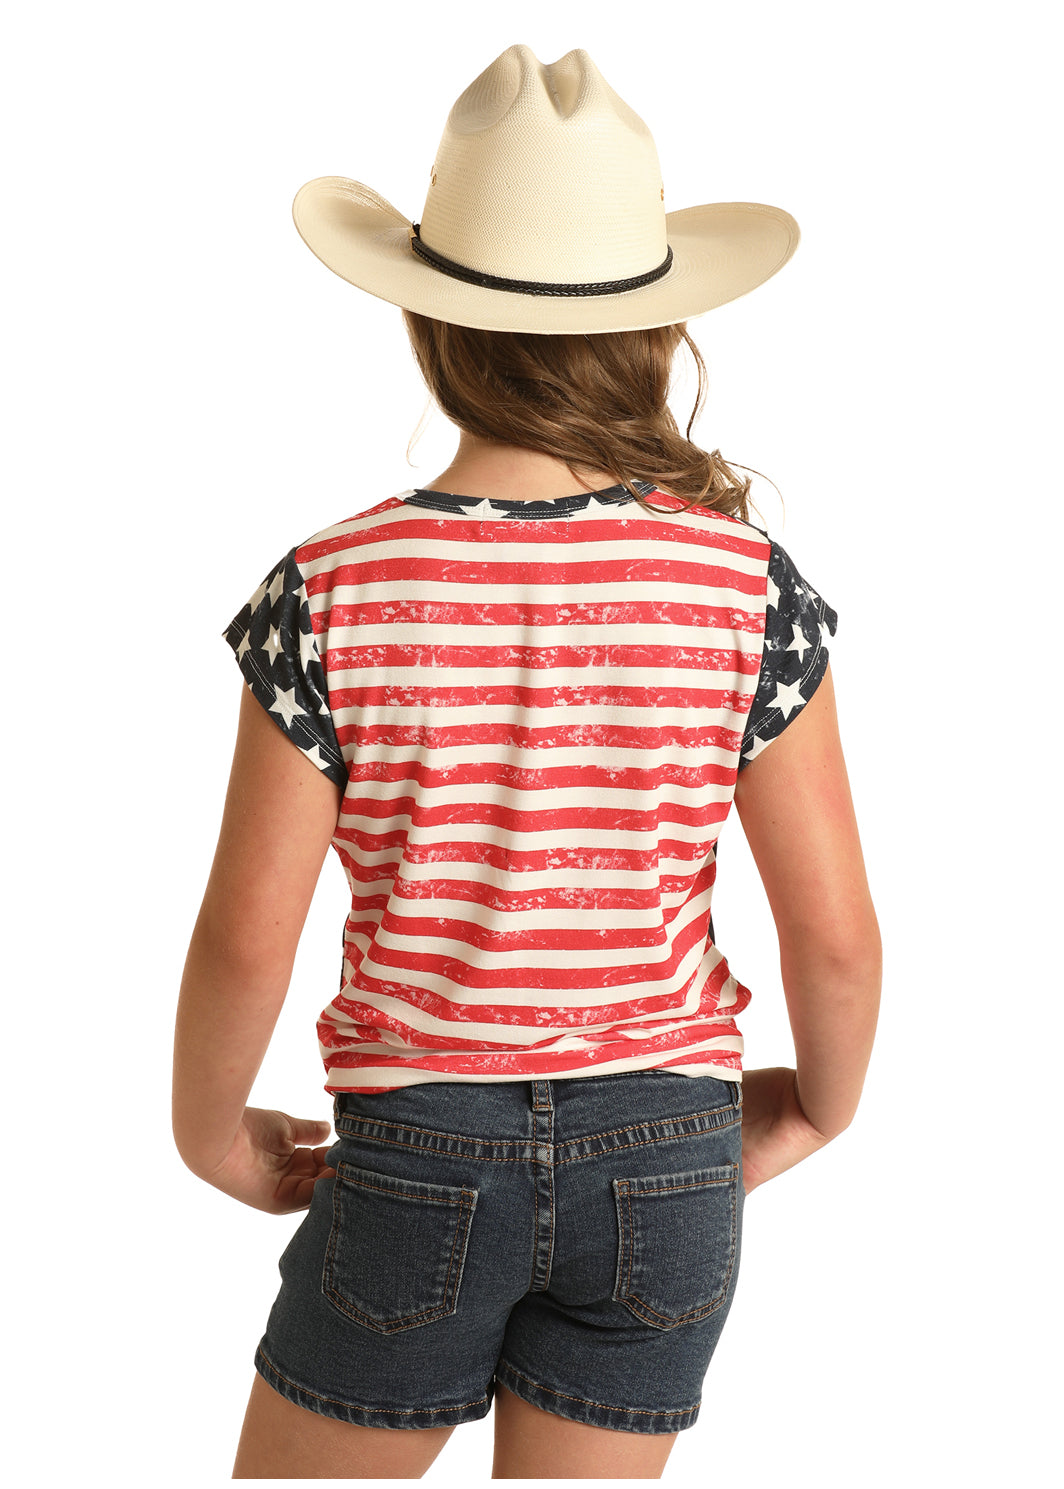 Panhandle Slim® Girl's Rock N Roll Flag Print Tee Shirt